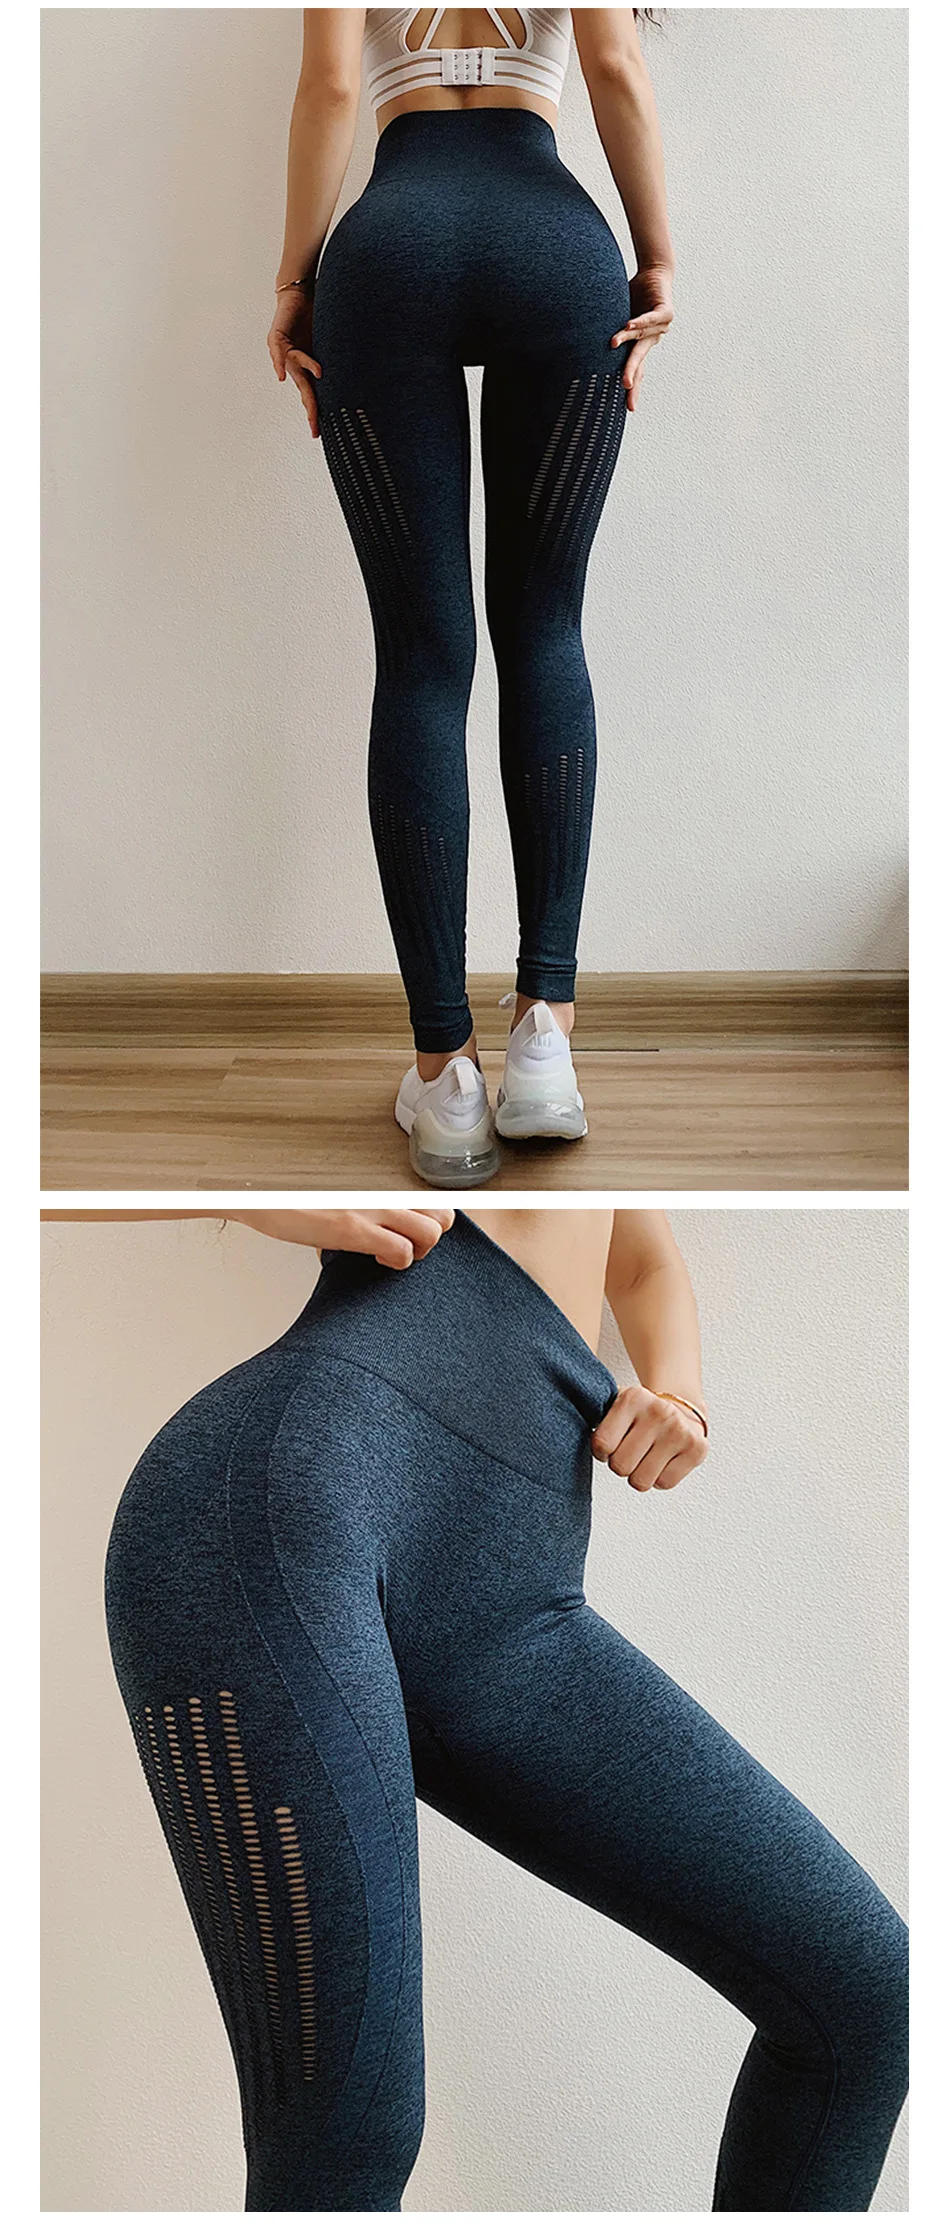 Бесшовные брюки для йоги с контролем живота, эластичные компрессионные колготки с высокой талией, спортивные штаны, женские леггинсы для бега, фитнеса